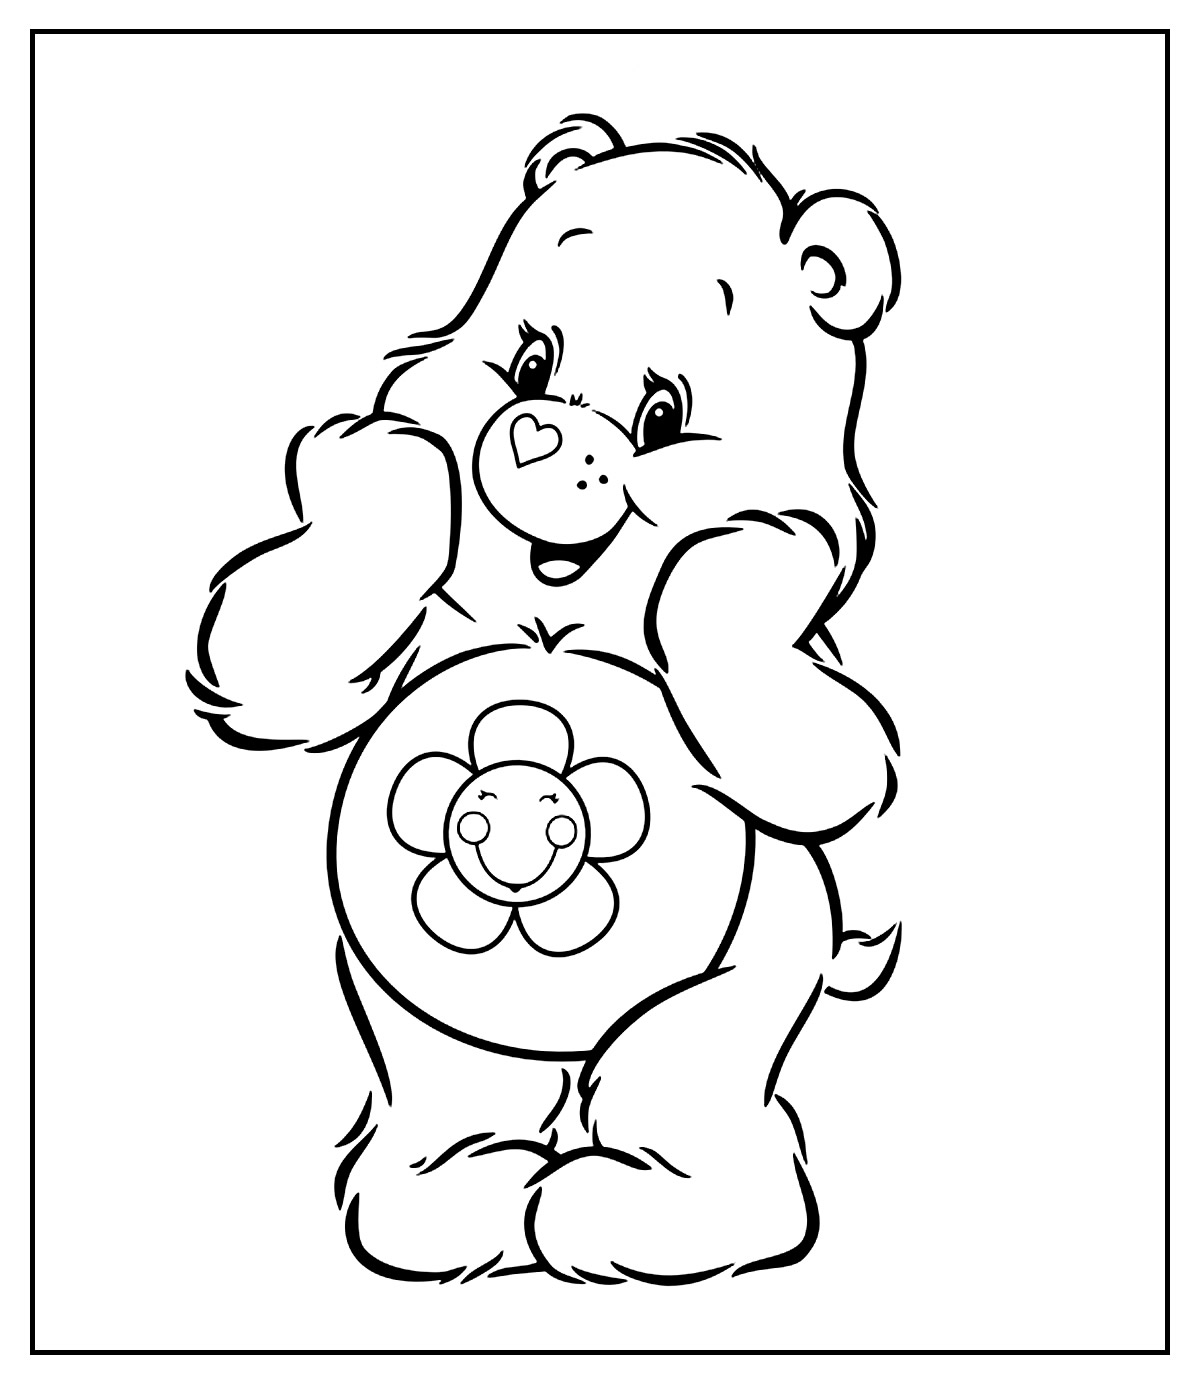 Página para colorir de Ursinhos Carinhosos